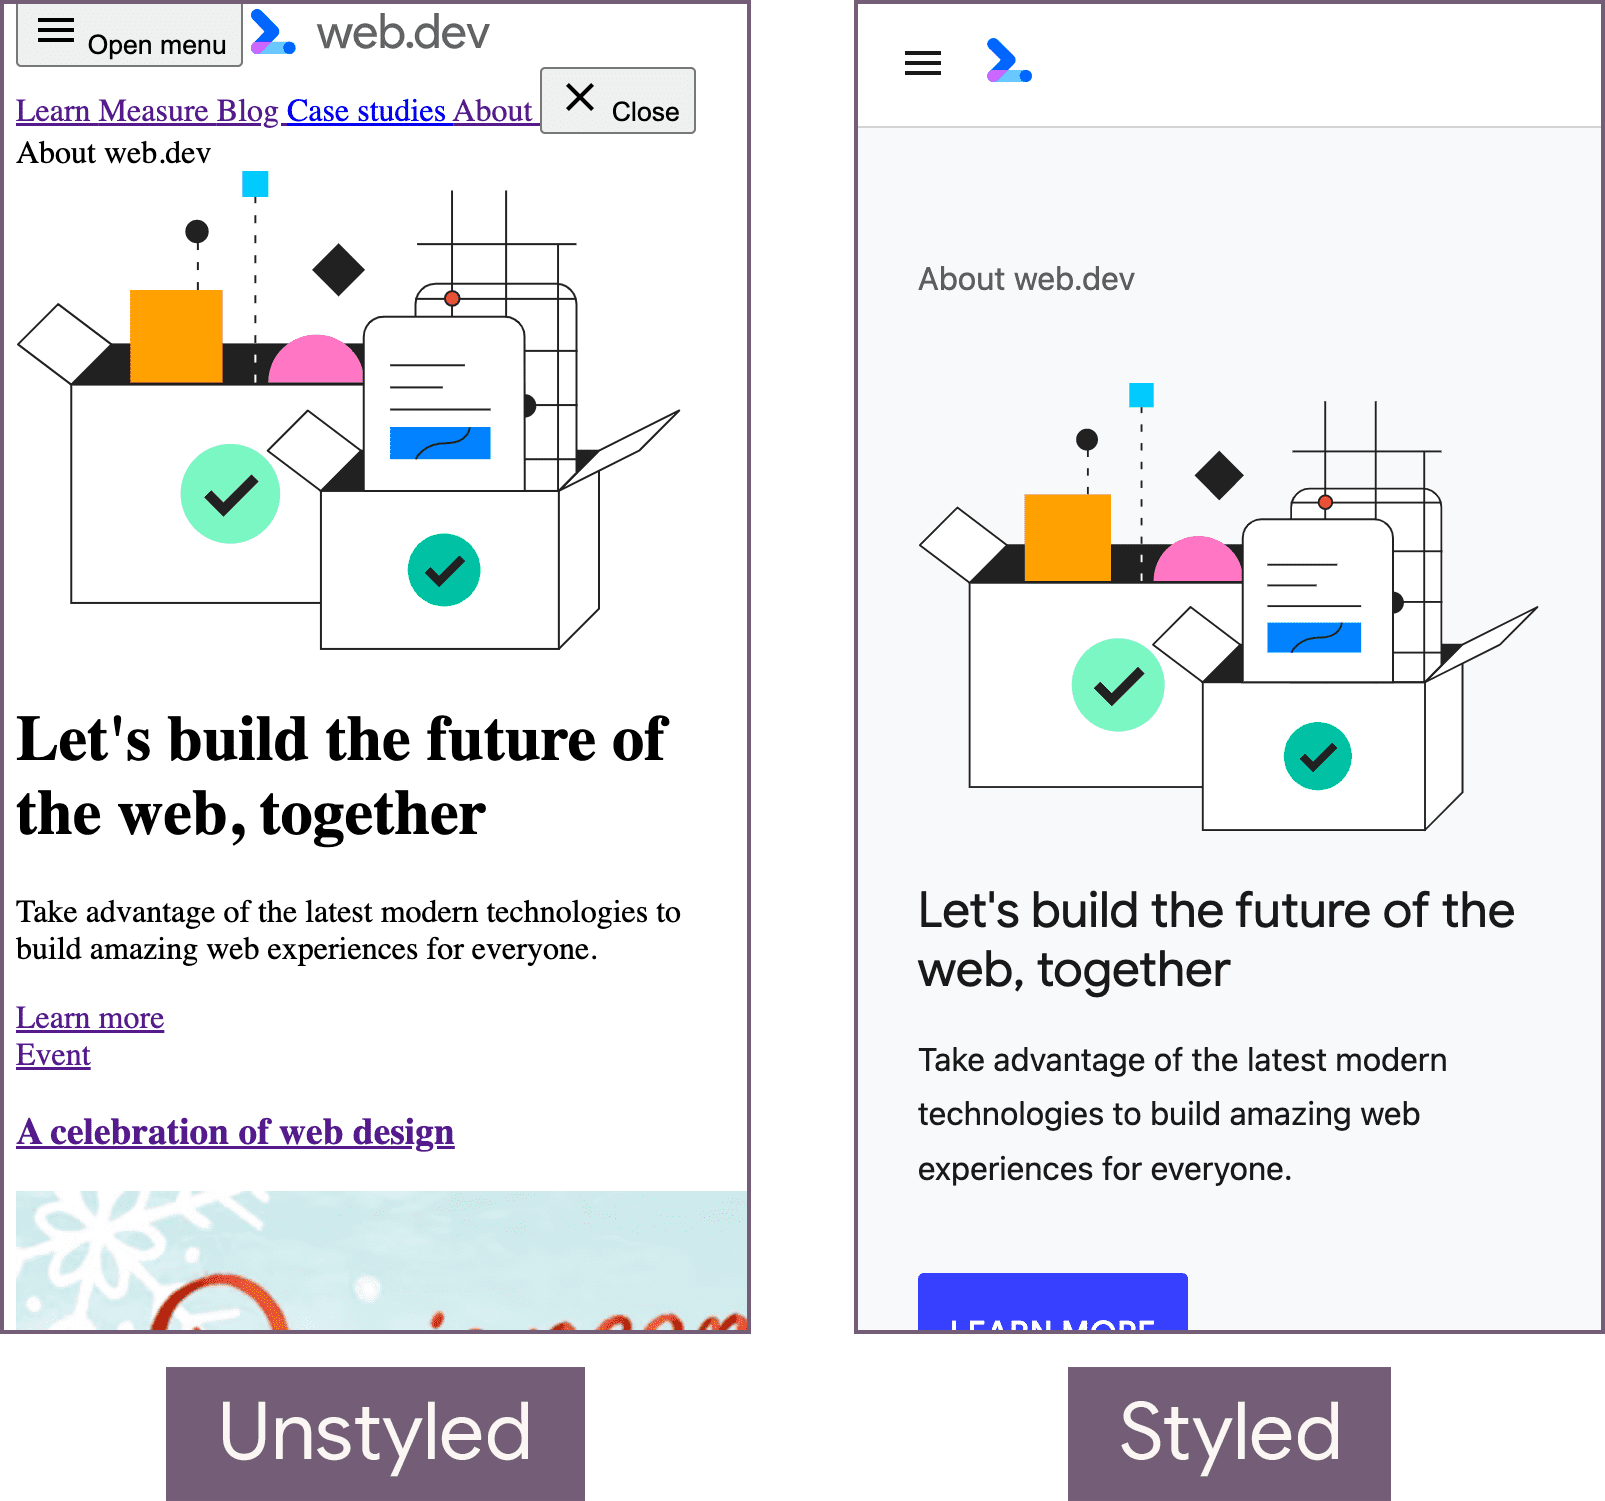 web.dev 首頁處於未設定樣式的狀態 (左側) 和樣式設定狀態 (右側)。